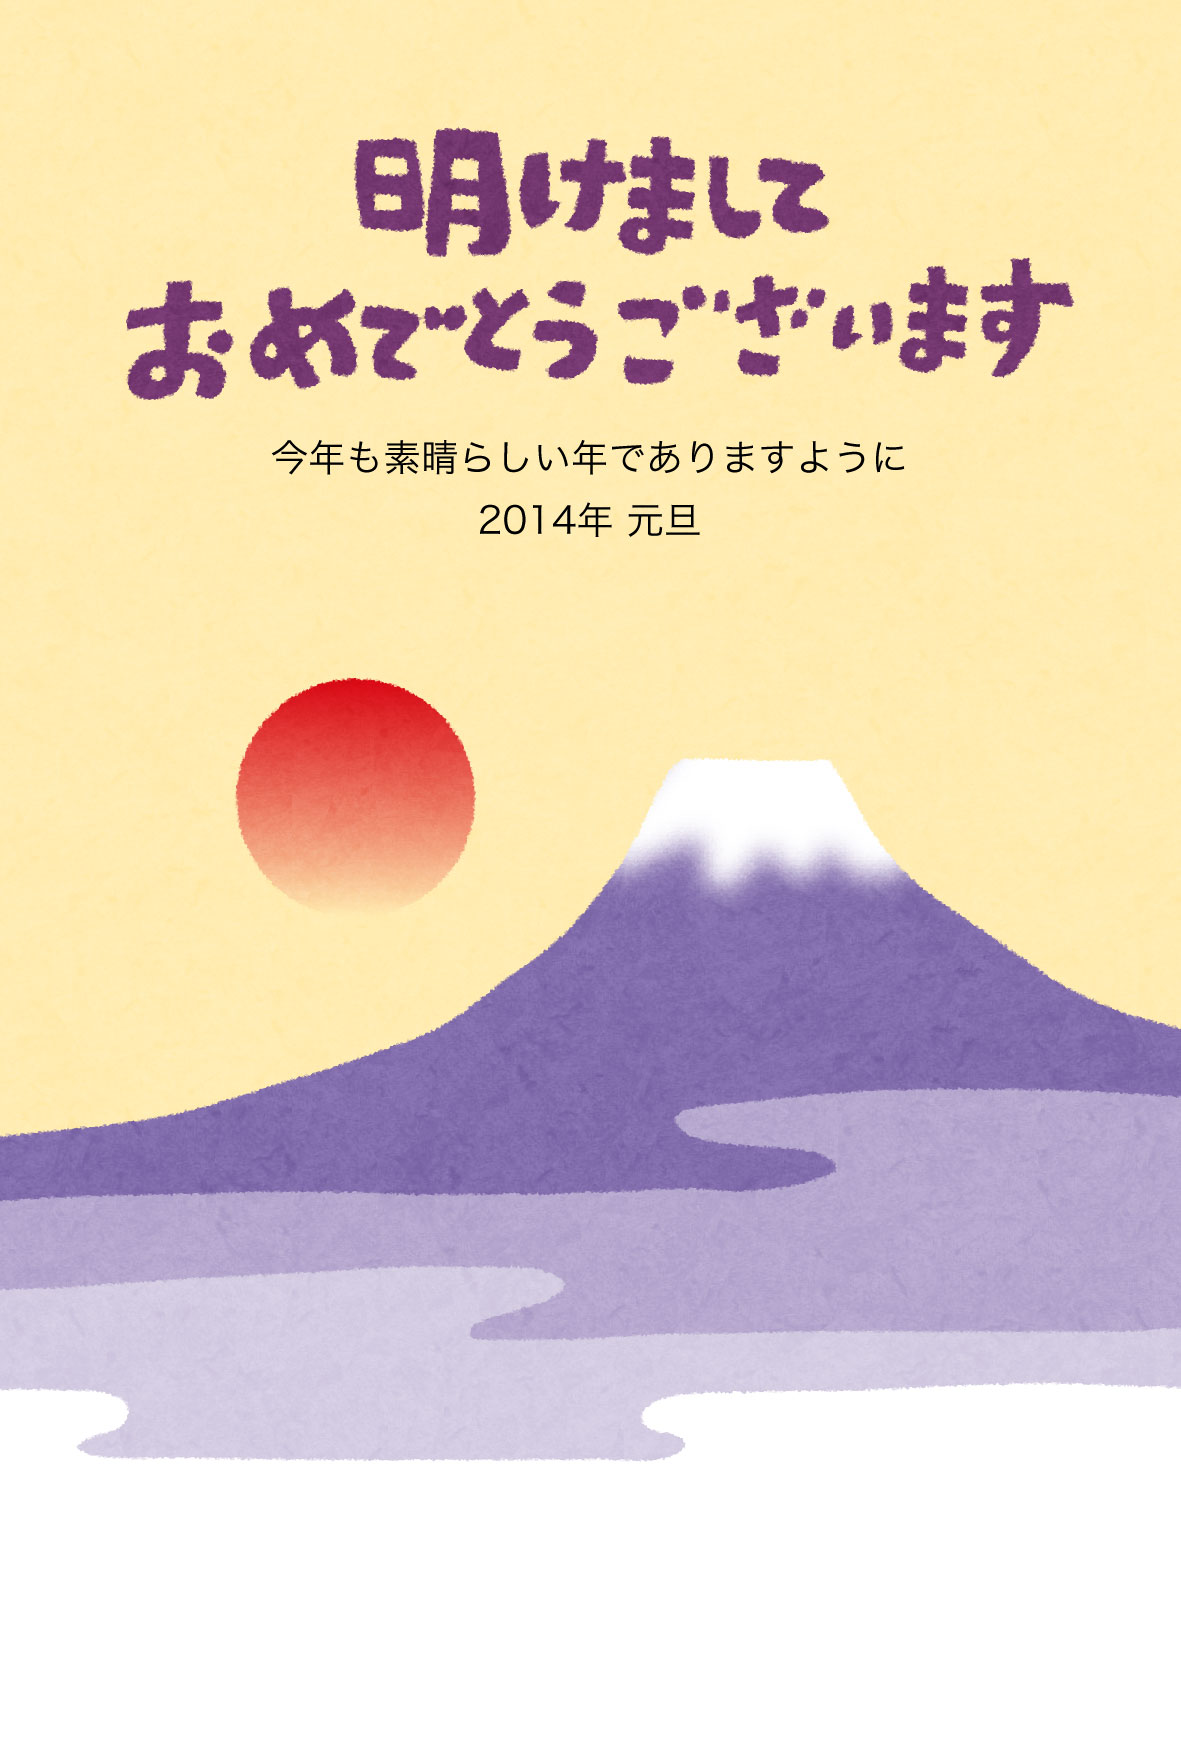 富士山と初日の出のイラスト年賀状 かわいい無料年賀状テンプレート